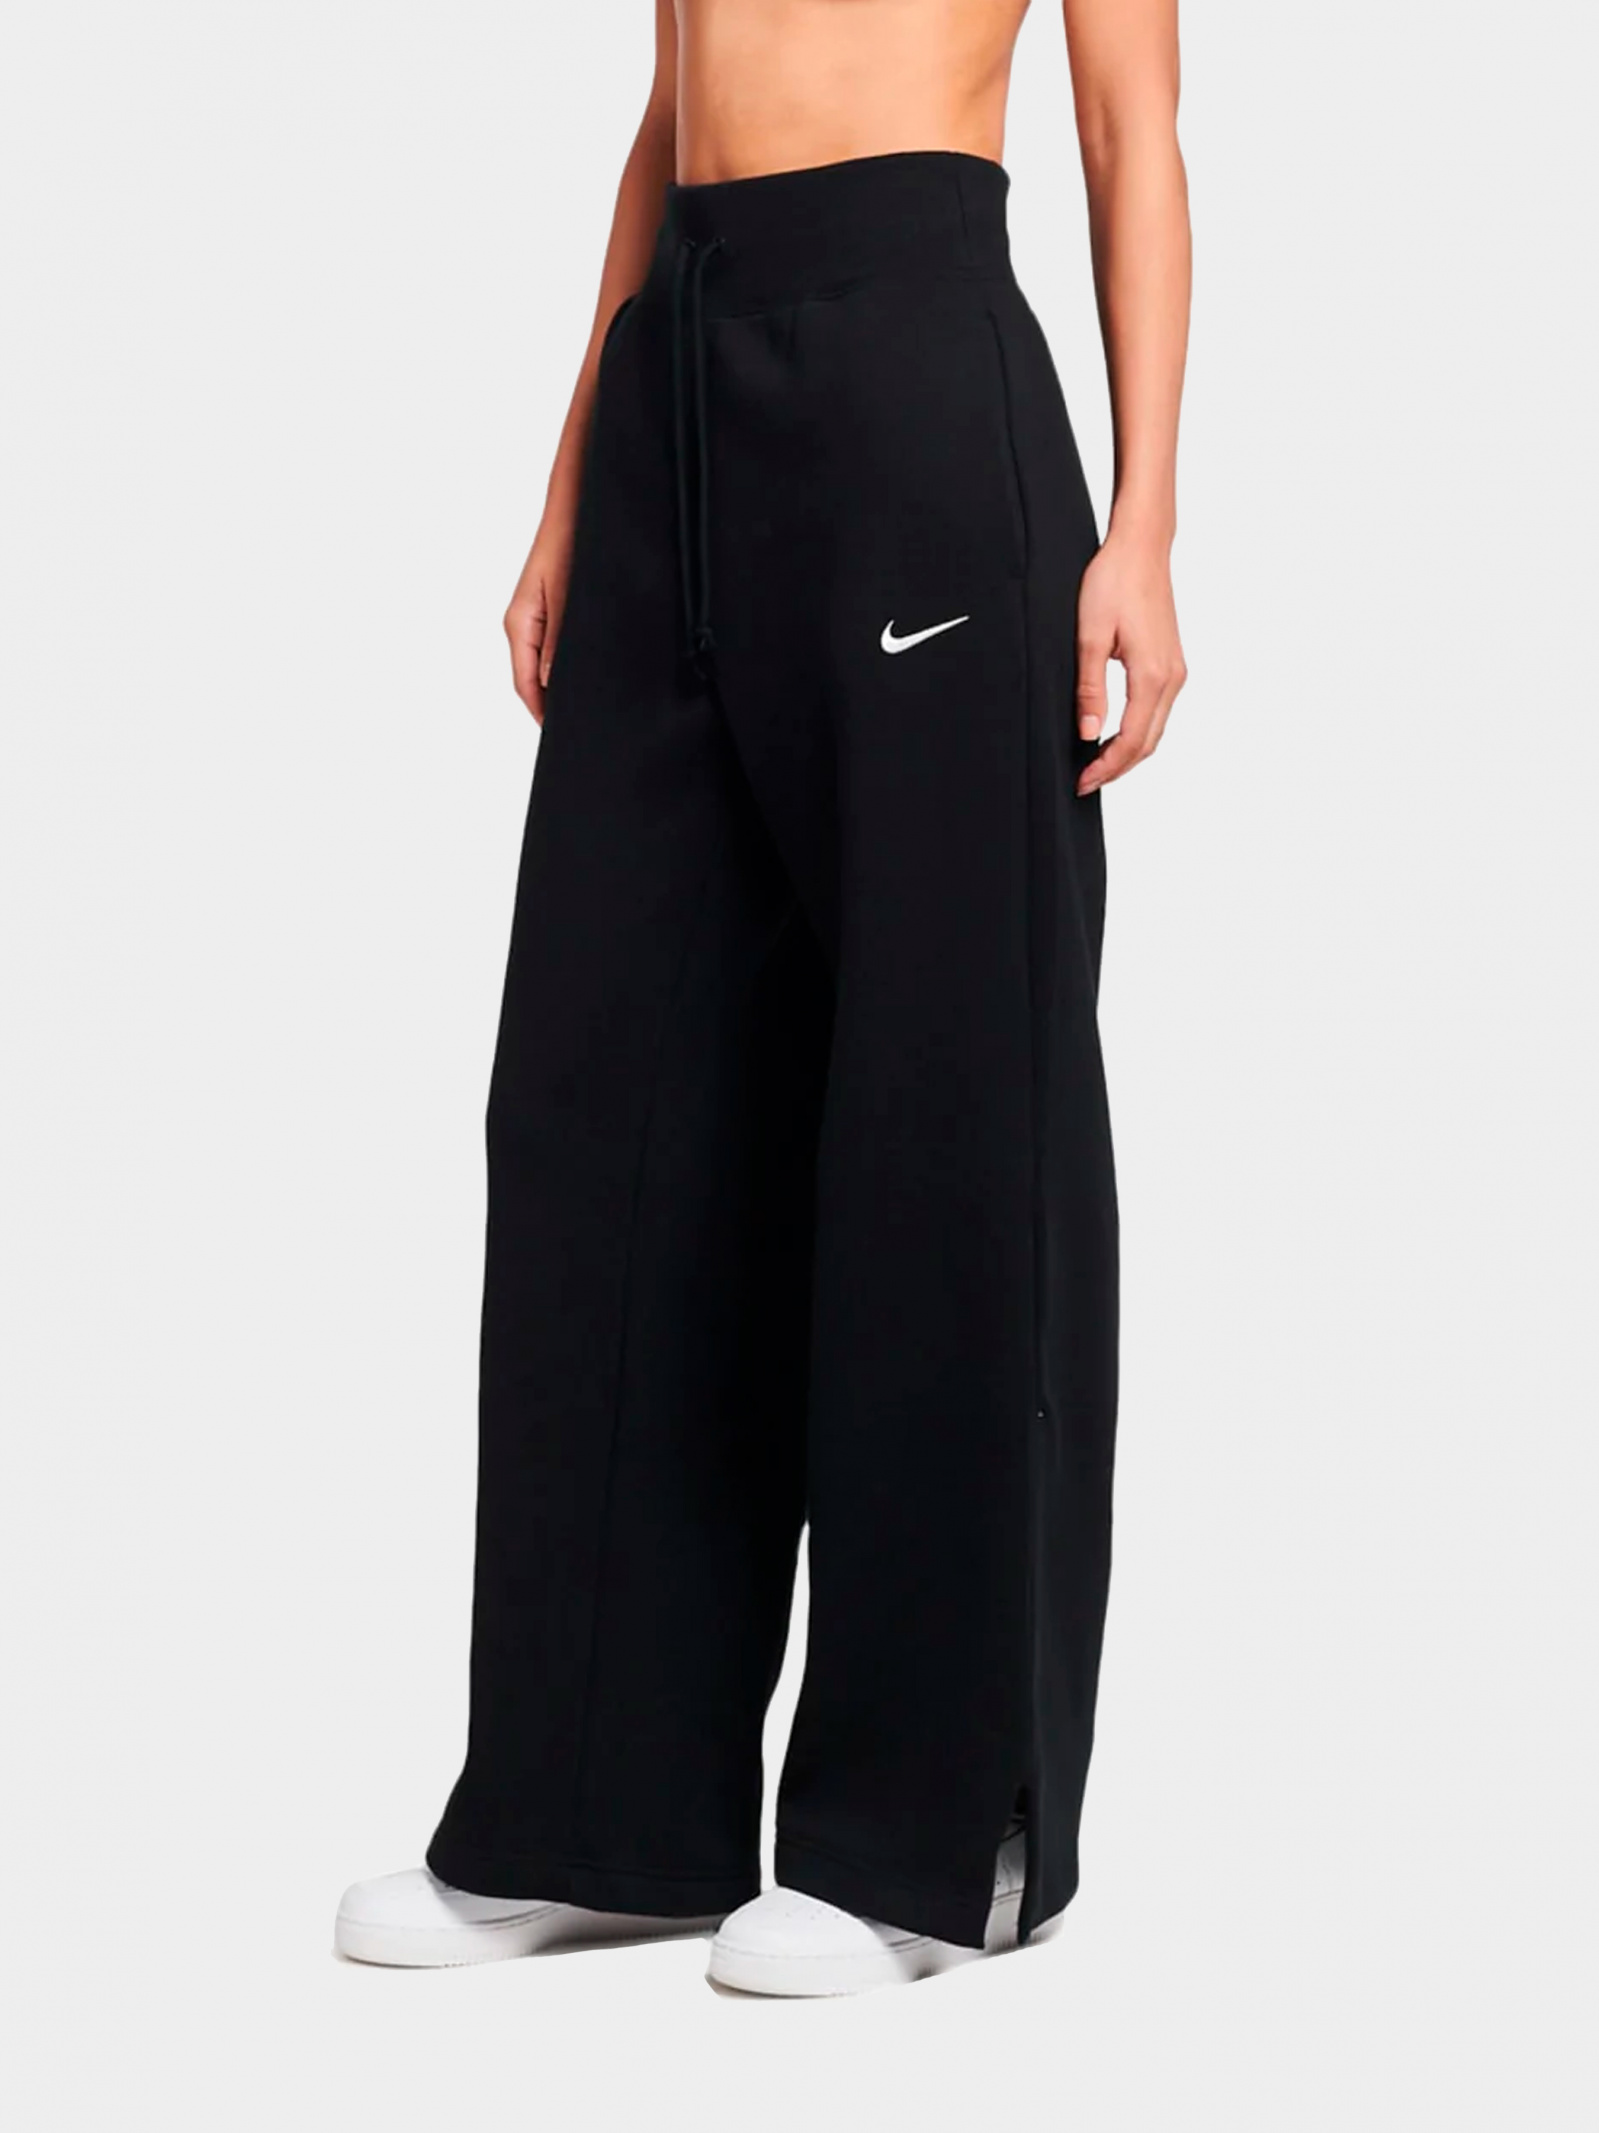 Штаны спортивные NIKE DQ5615-010 для женщин, цвет: Чёрный - купить по  выгодной цене в Казахстане